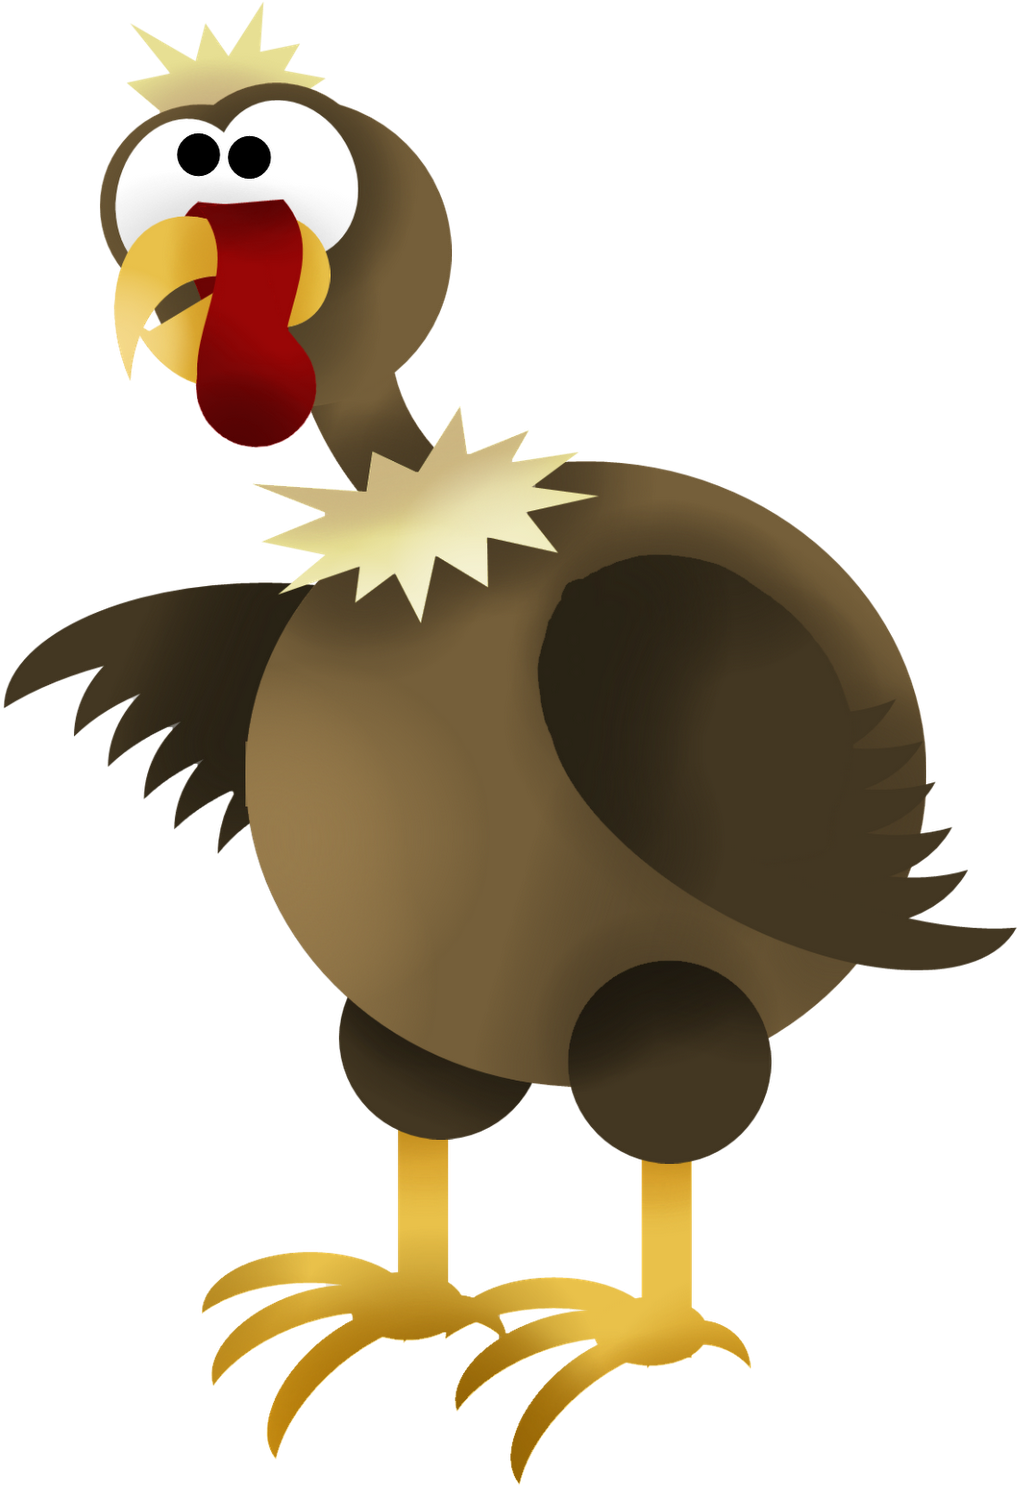 Here's The Plucked Turkey - Show Some Pluck Marsh David / Streichquartett (1067x1600)